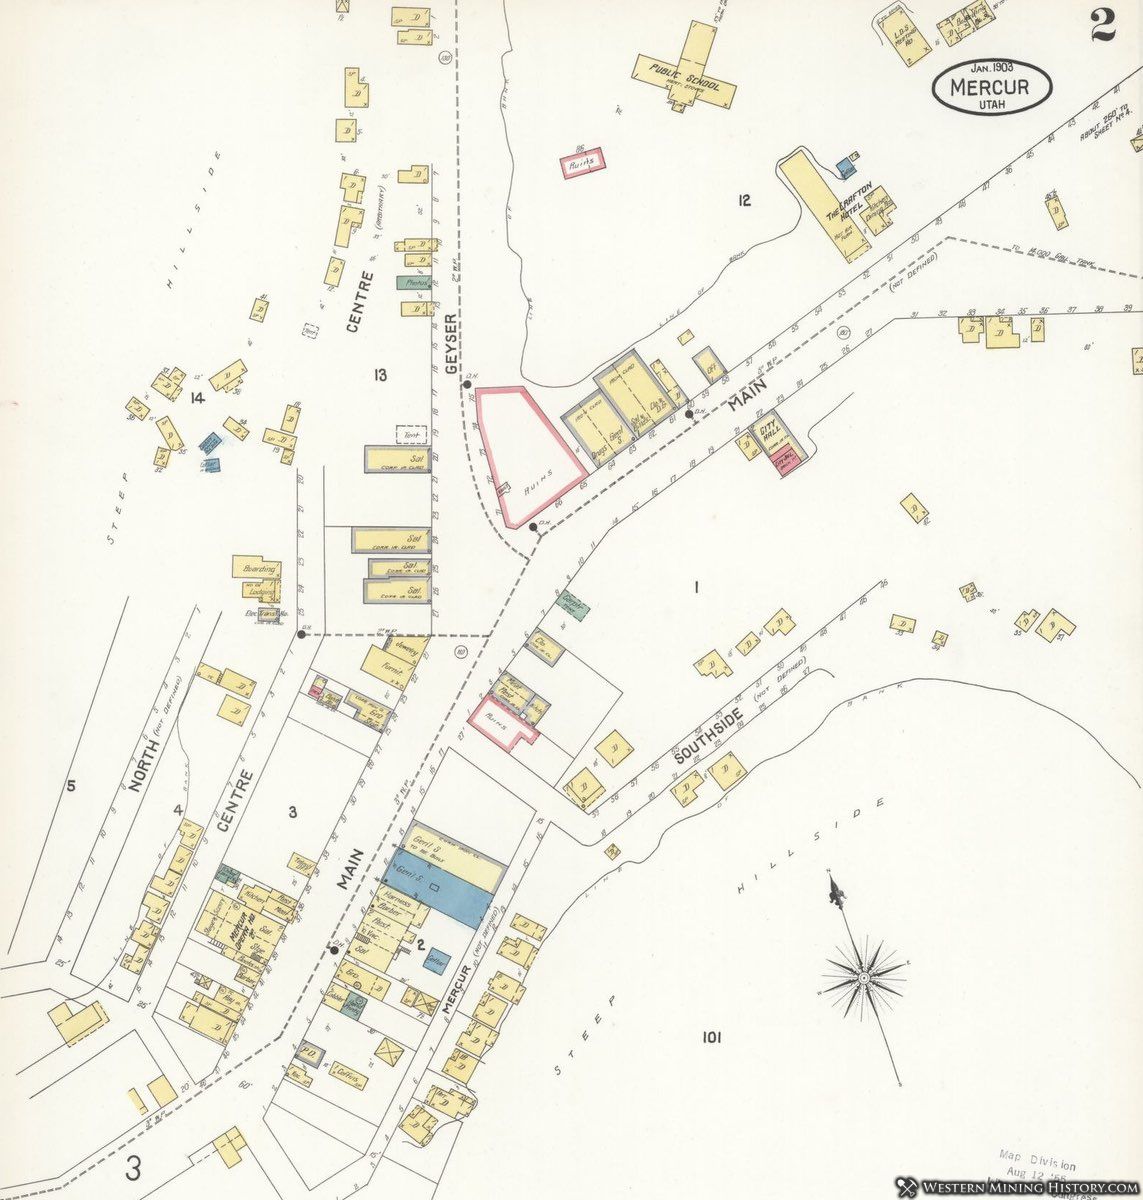 1903 Sanborn fire map for Mercur, Utah